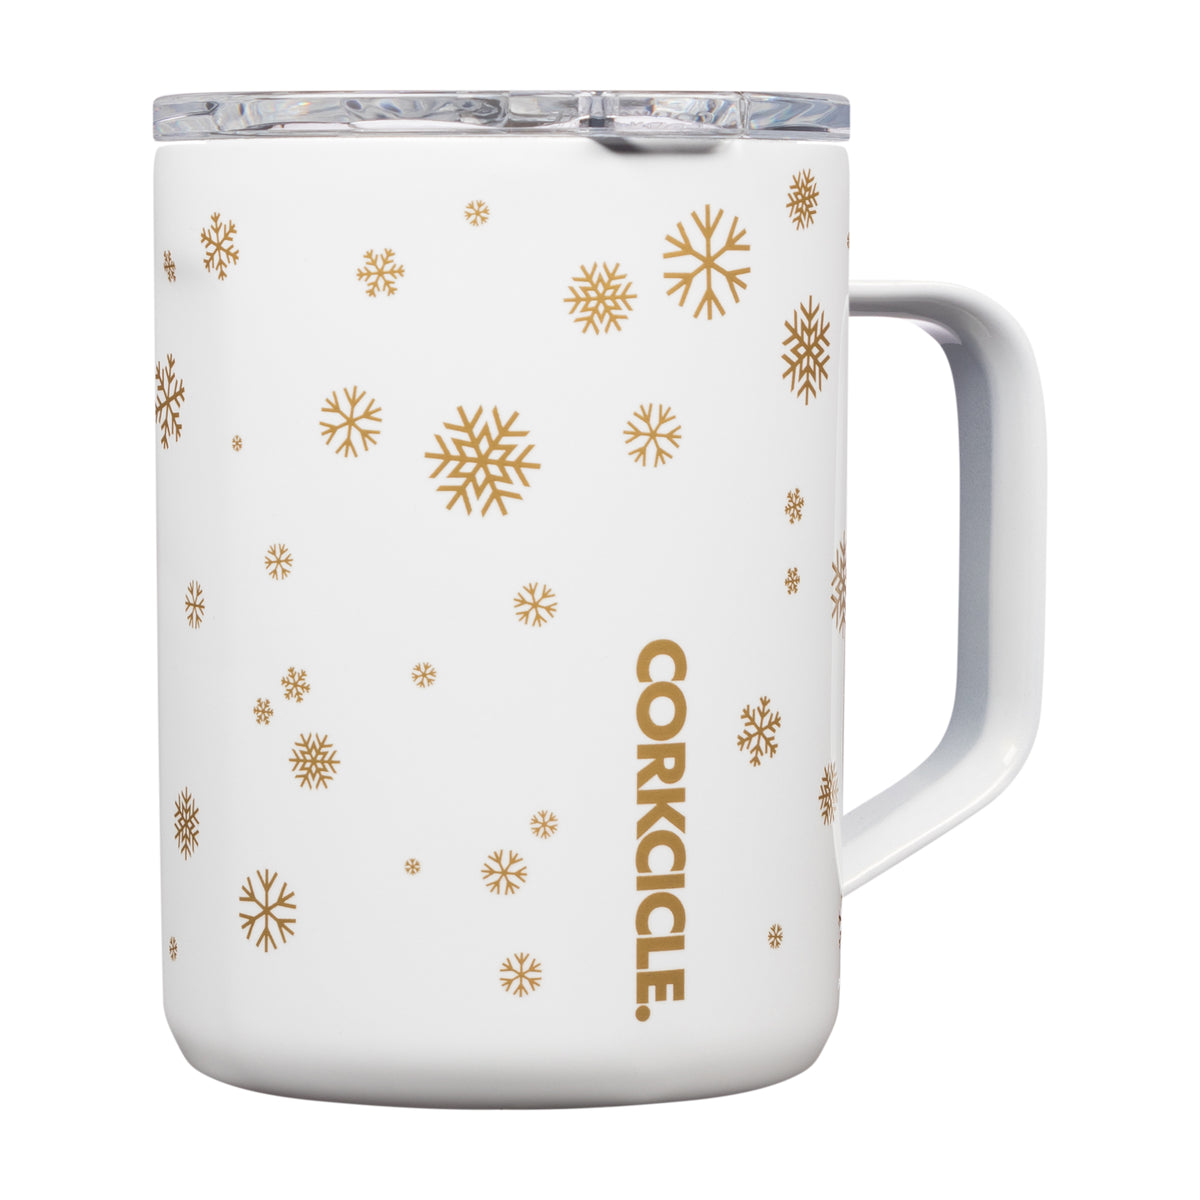 CORKCICLE - Mug Snowfall White 16 oz